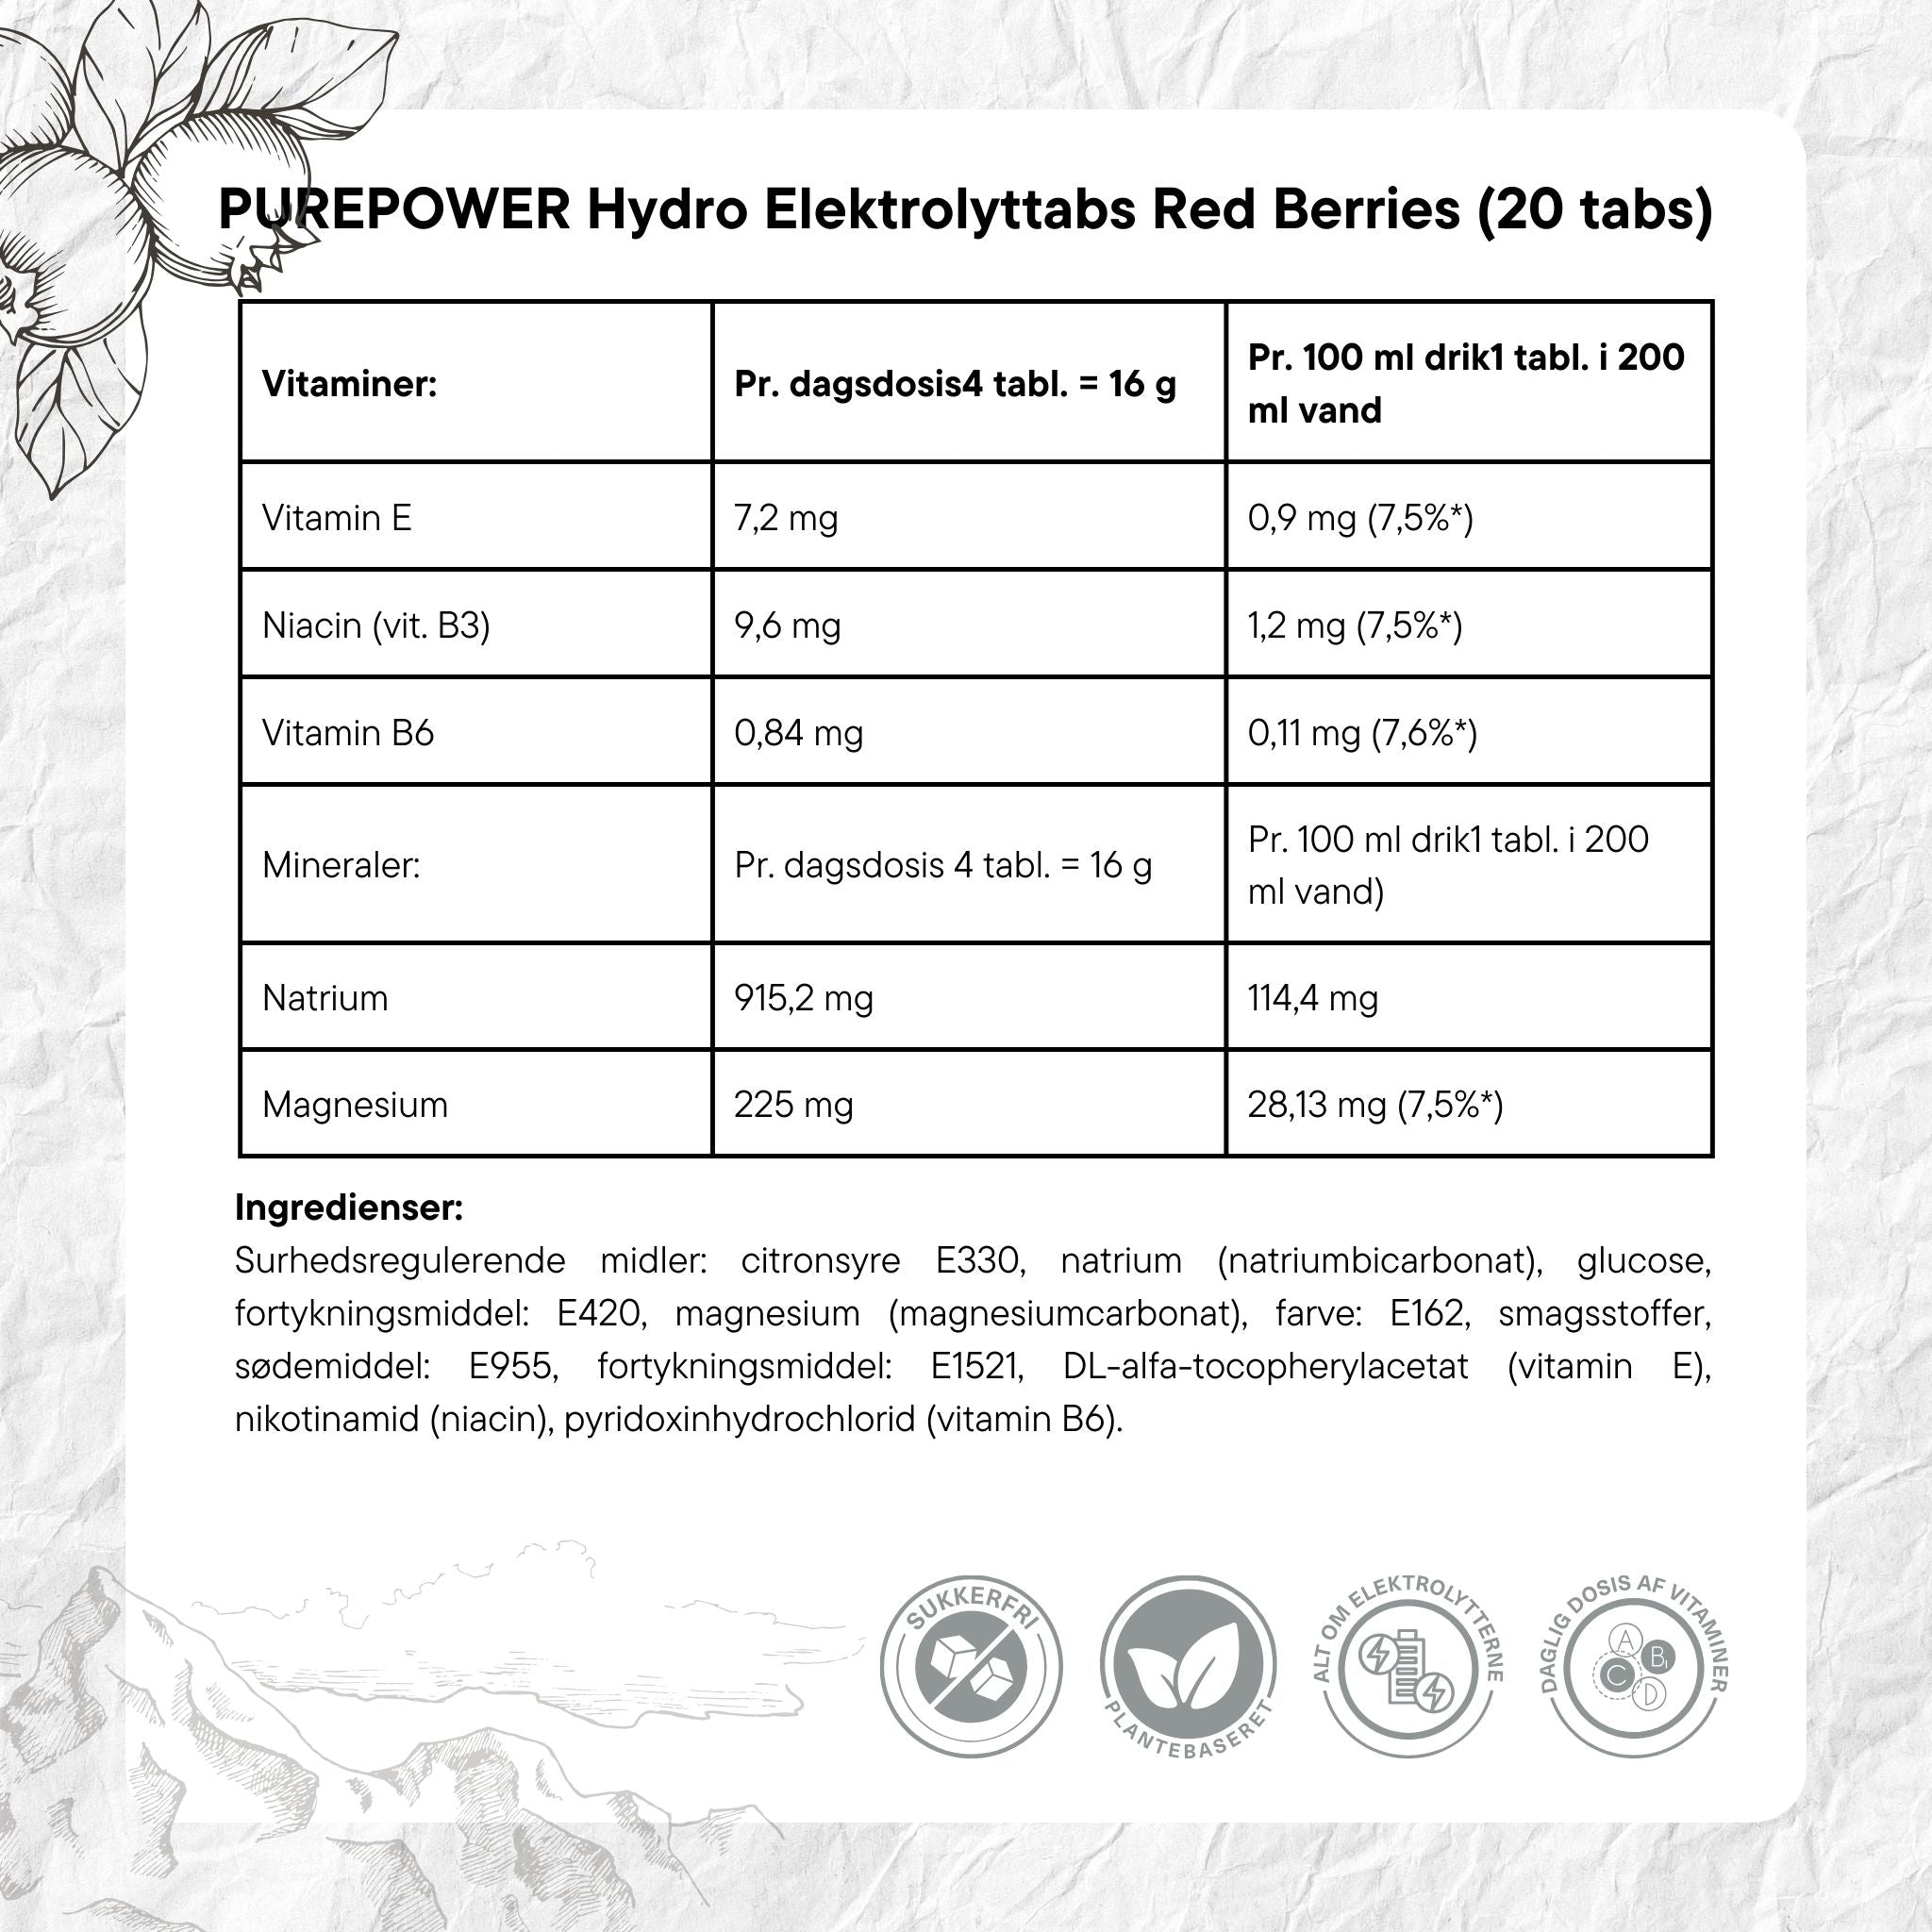 PurePower Elektrolyttabs Red Berries (20 tabs)